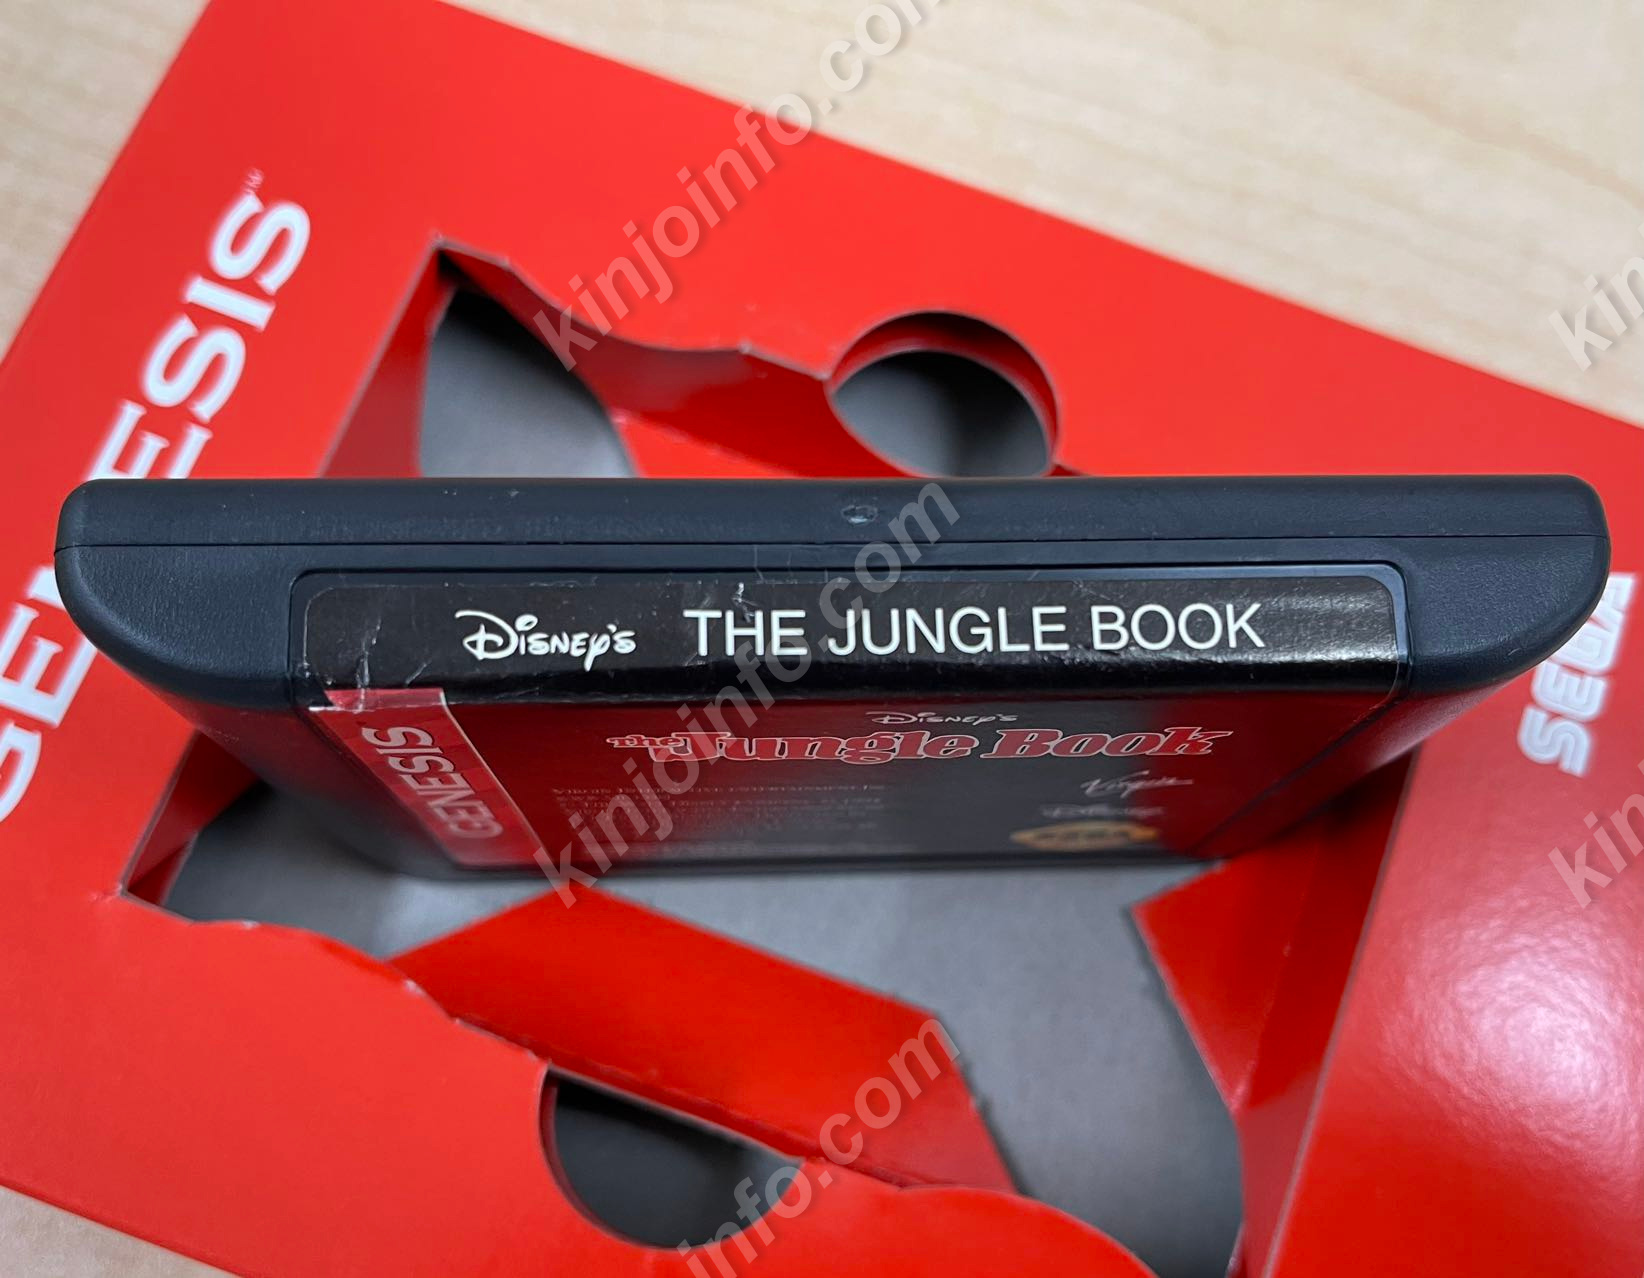 ❤お買い得パック❤ The Jungle Book【美品・Genesis北米版】 本・音楽